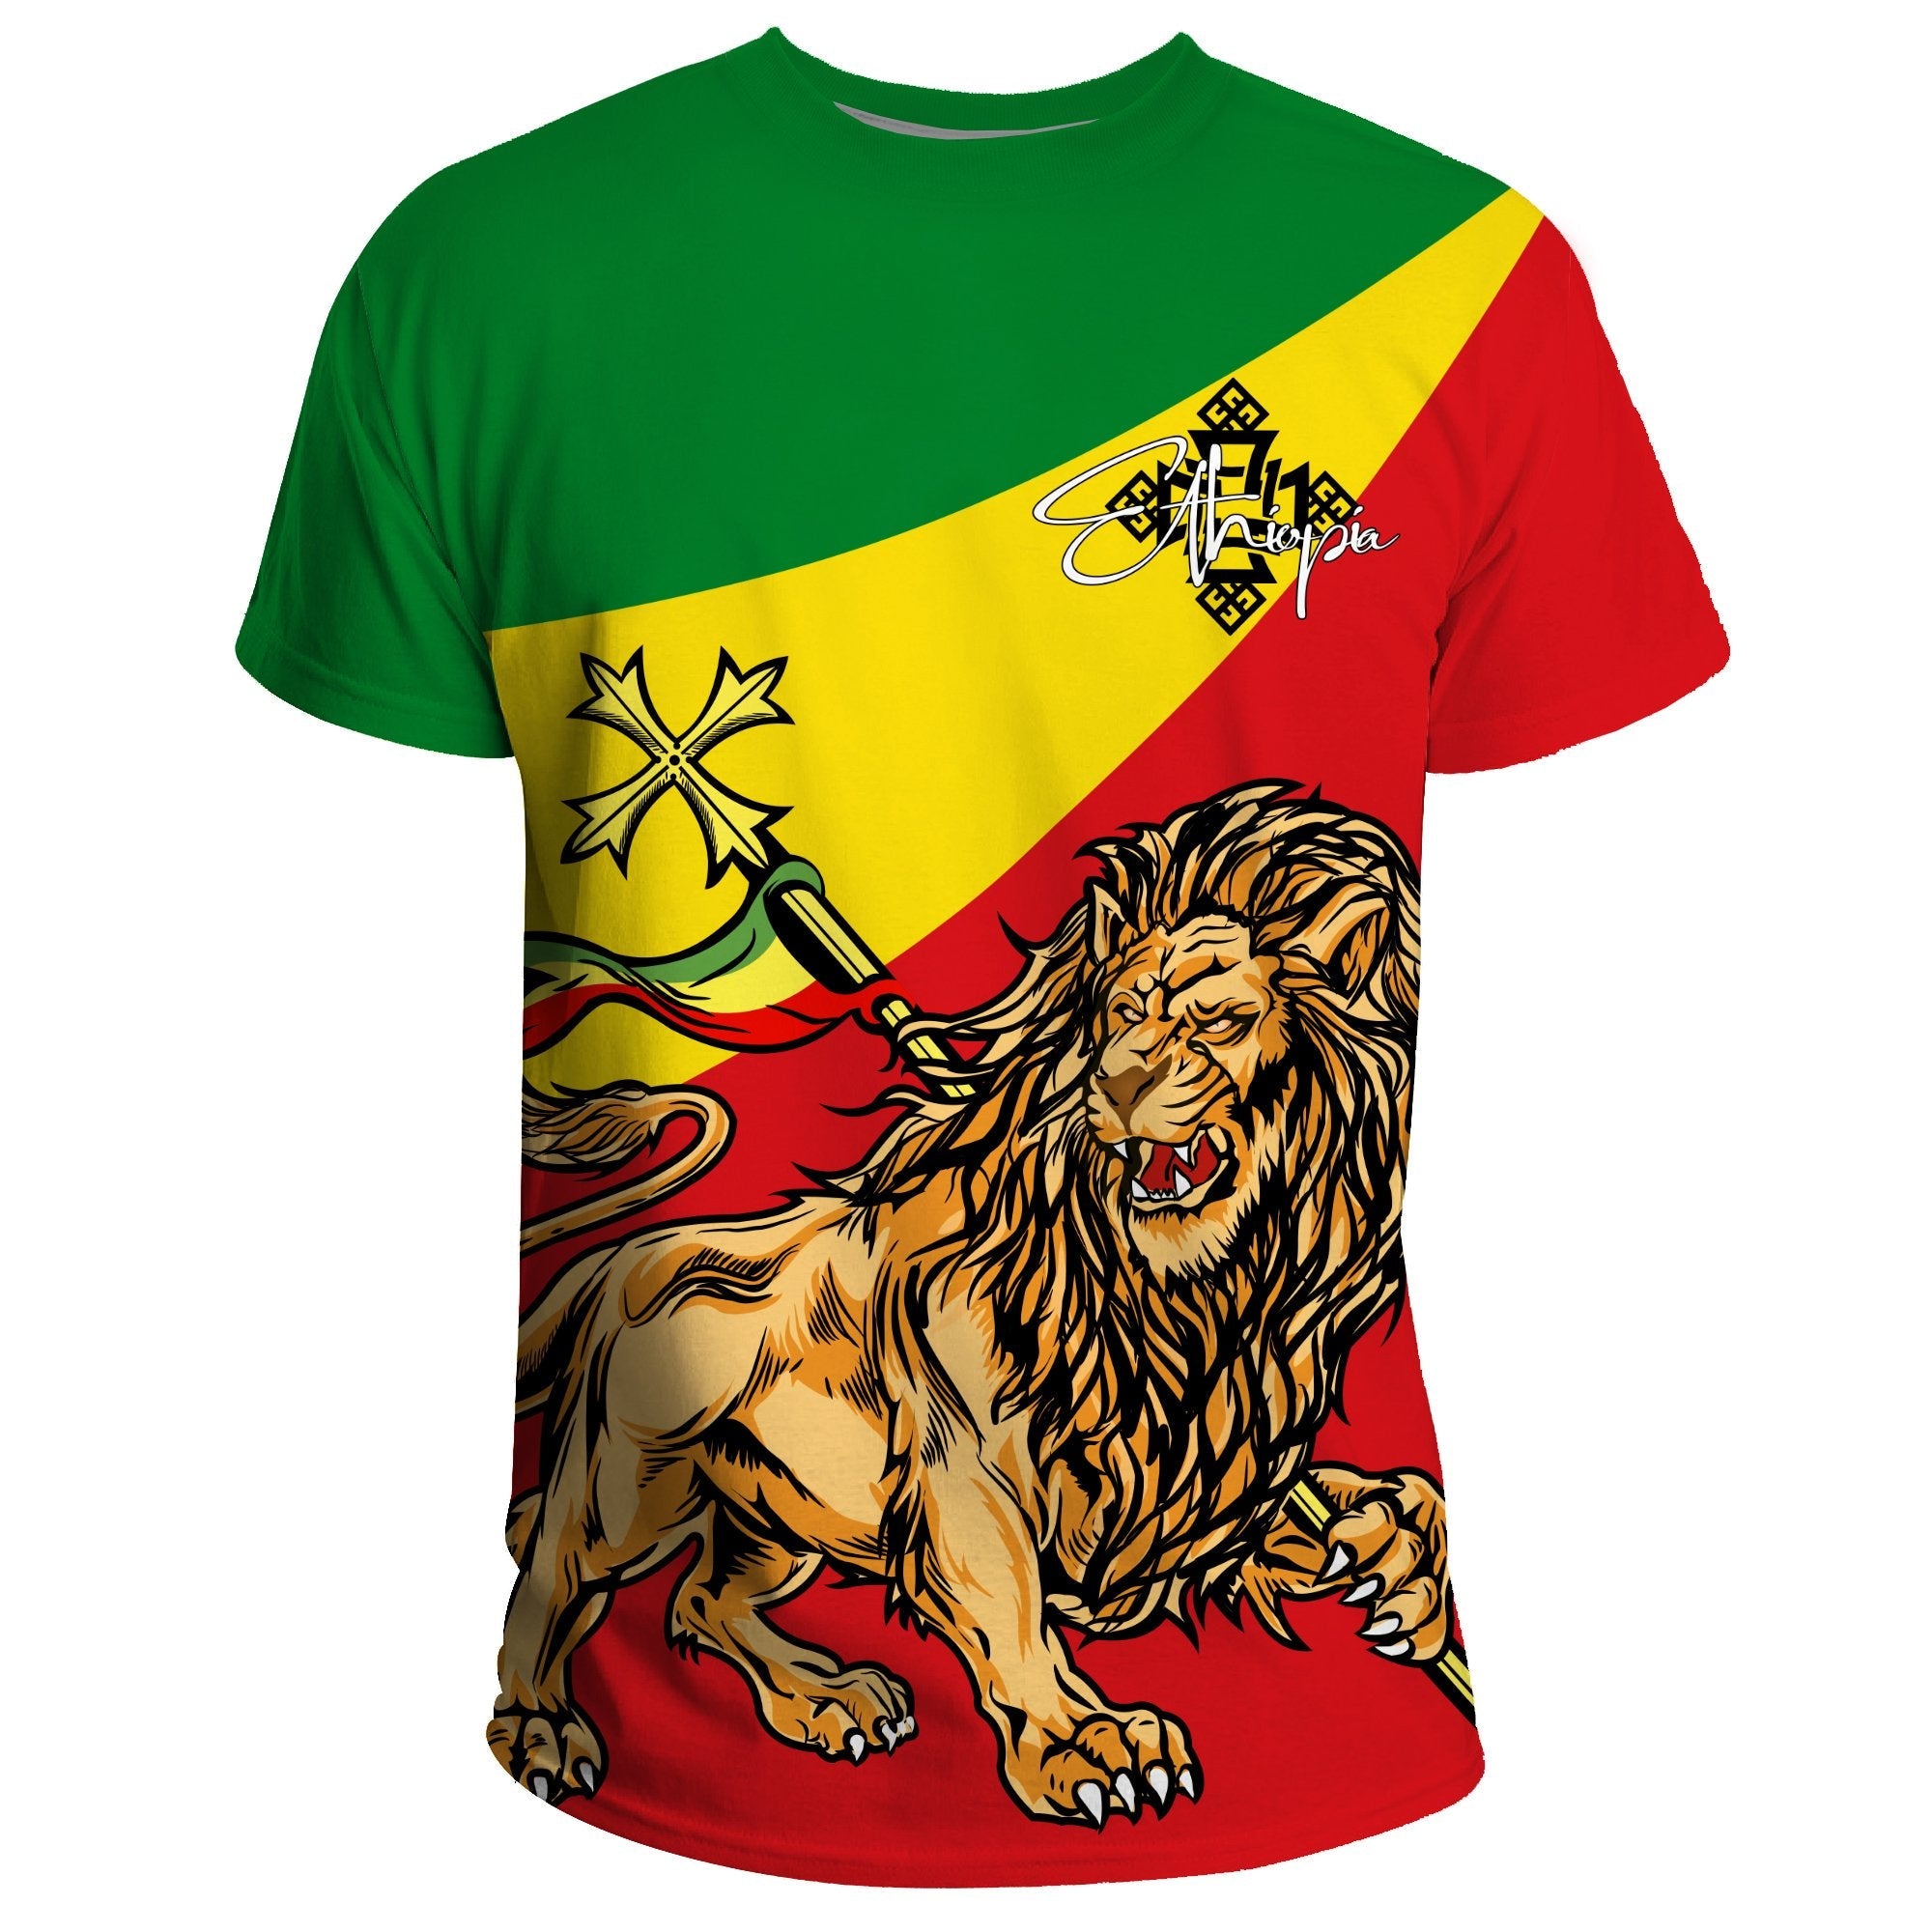 ethiopia-t-shirt-ethiopia-lion-judah-flag